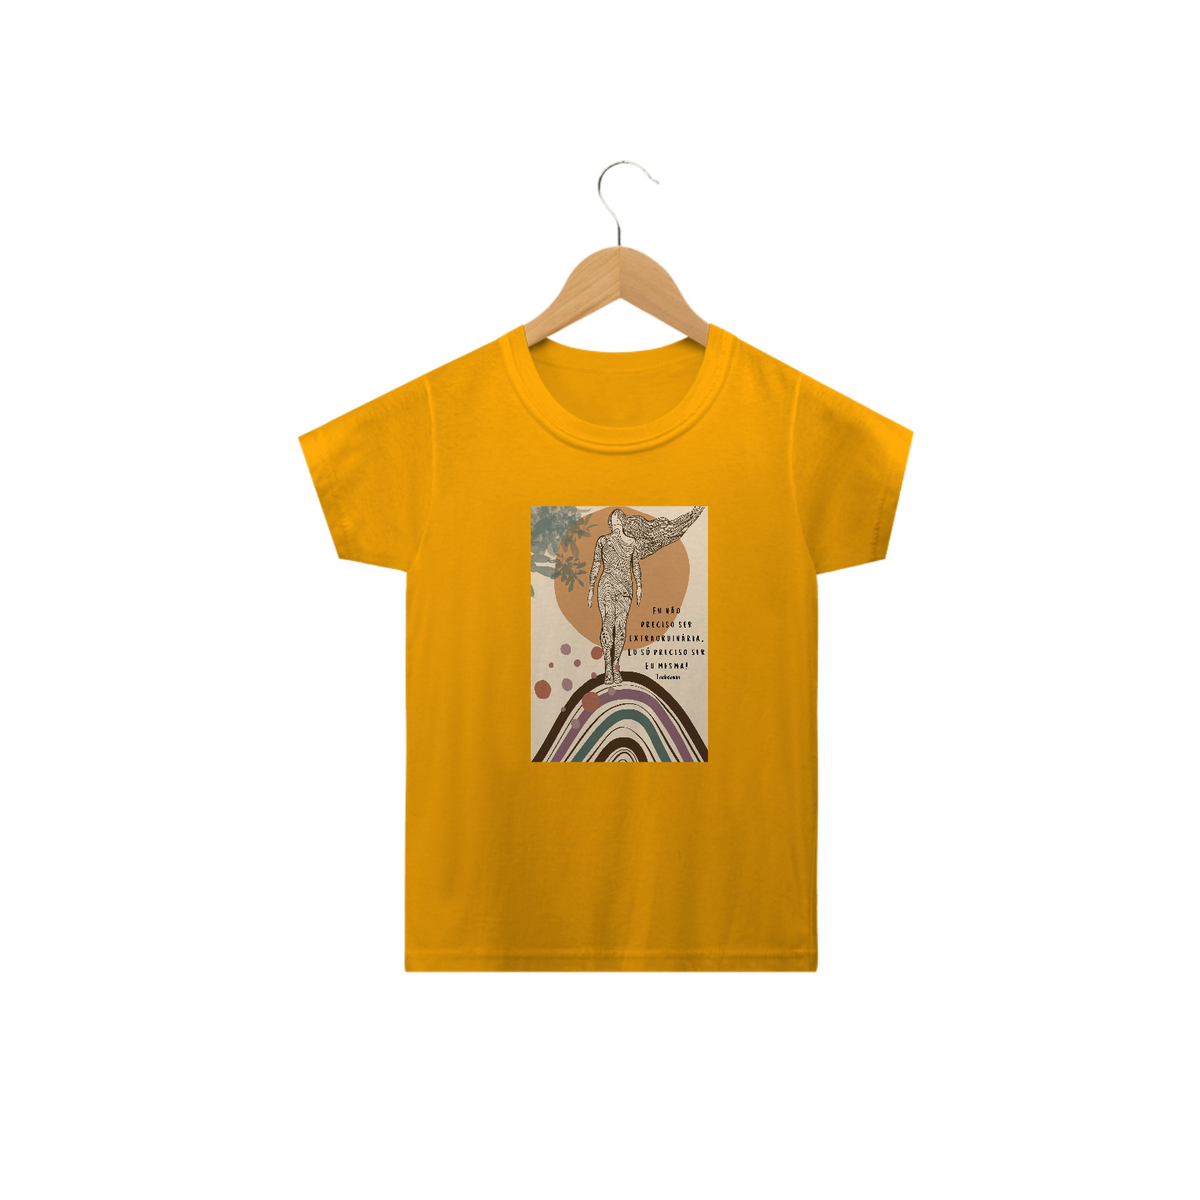 Nome do produto: Camiseta mini yogini Tadasana